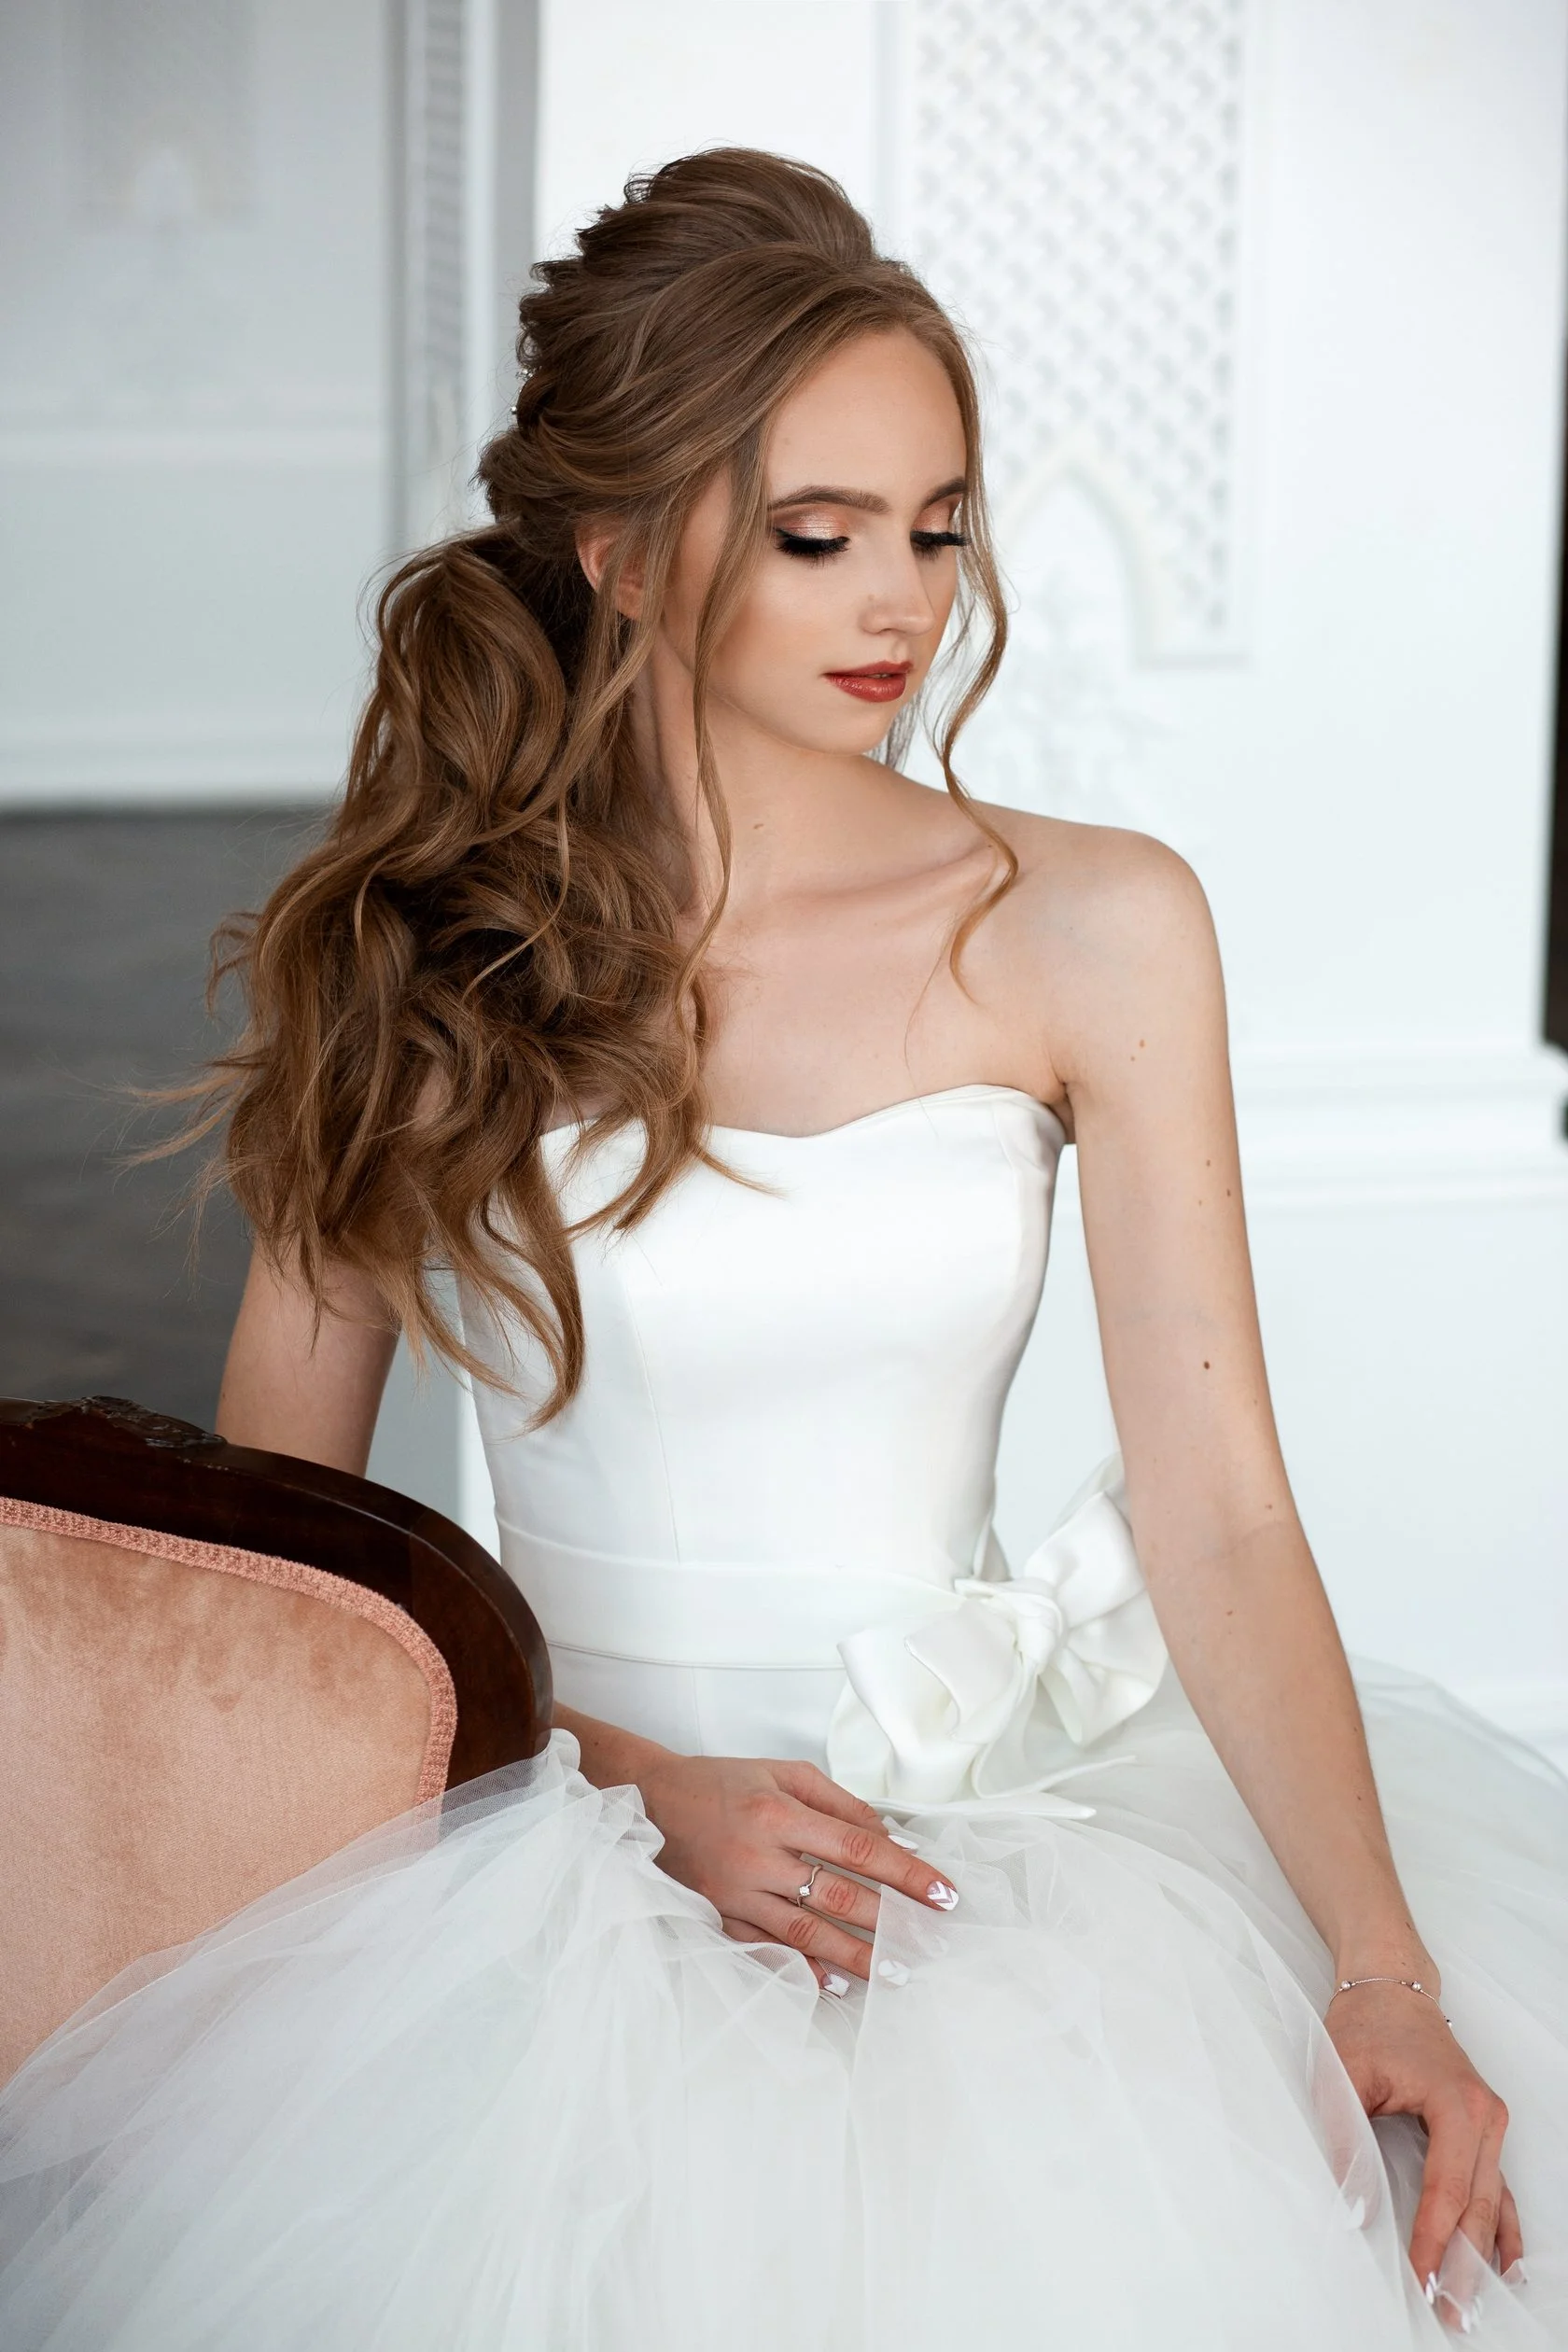 Весільні зачіски 2019: фото кращих варіантів укладок для нареченої - фото 438890